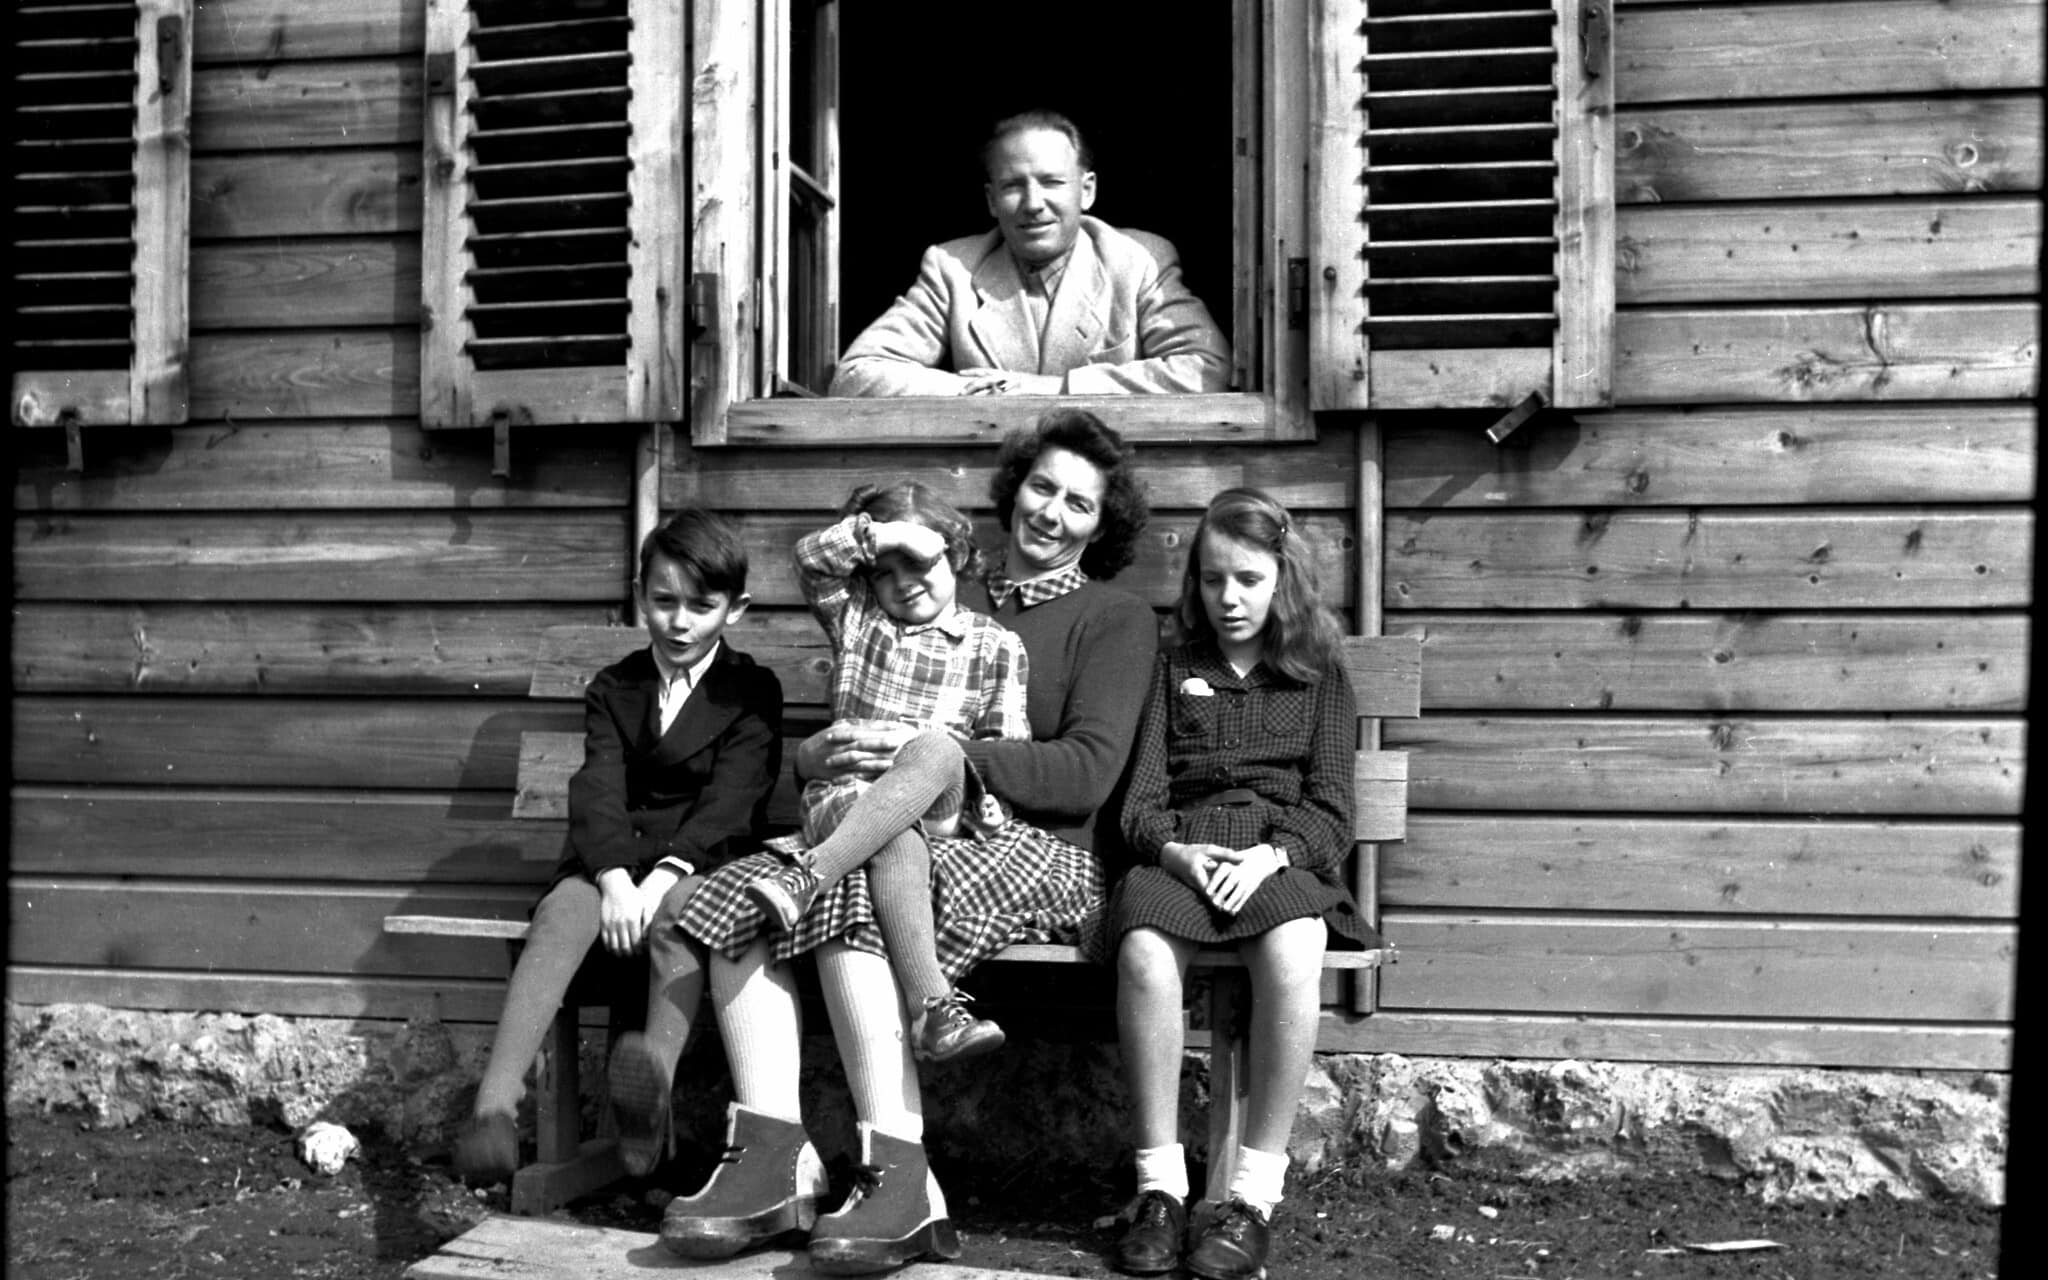 אוטו פון וכטר עם משפחתו באוסטריה, במהלך קיץ 1948 (צילום: באדיבות הורסט וכטר)